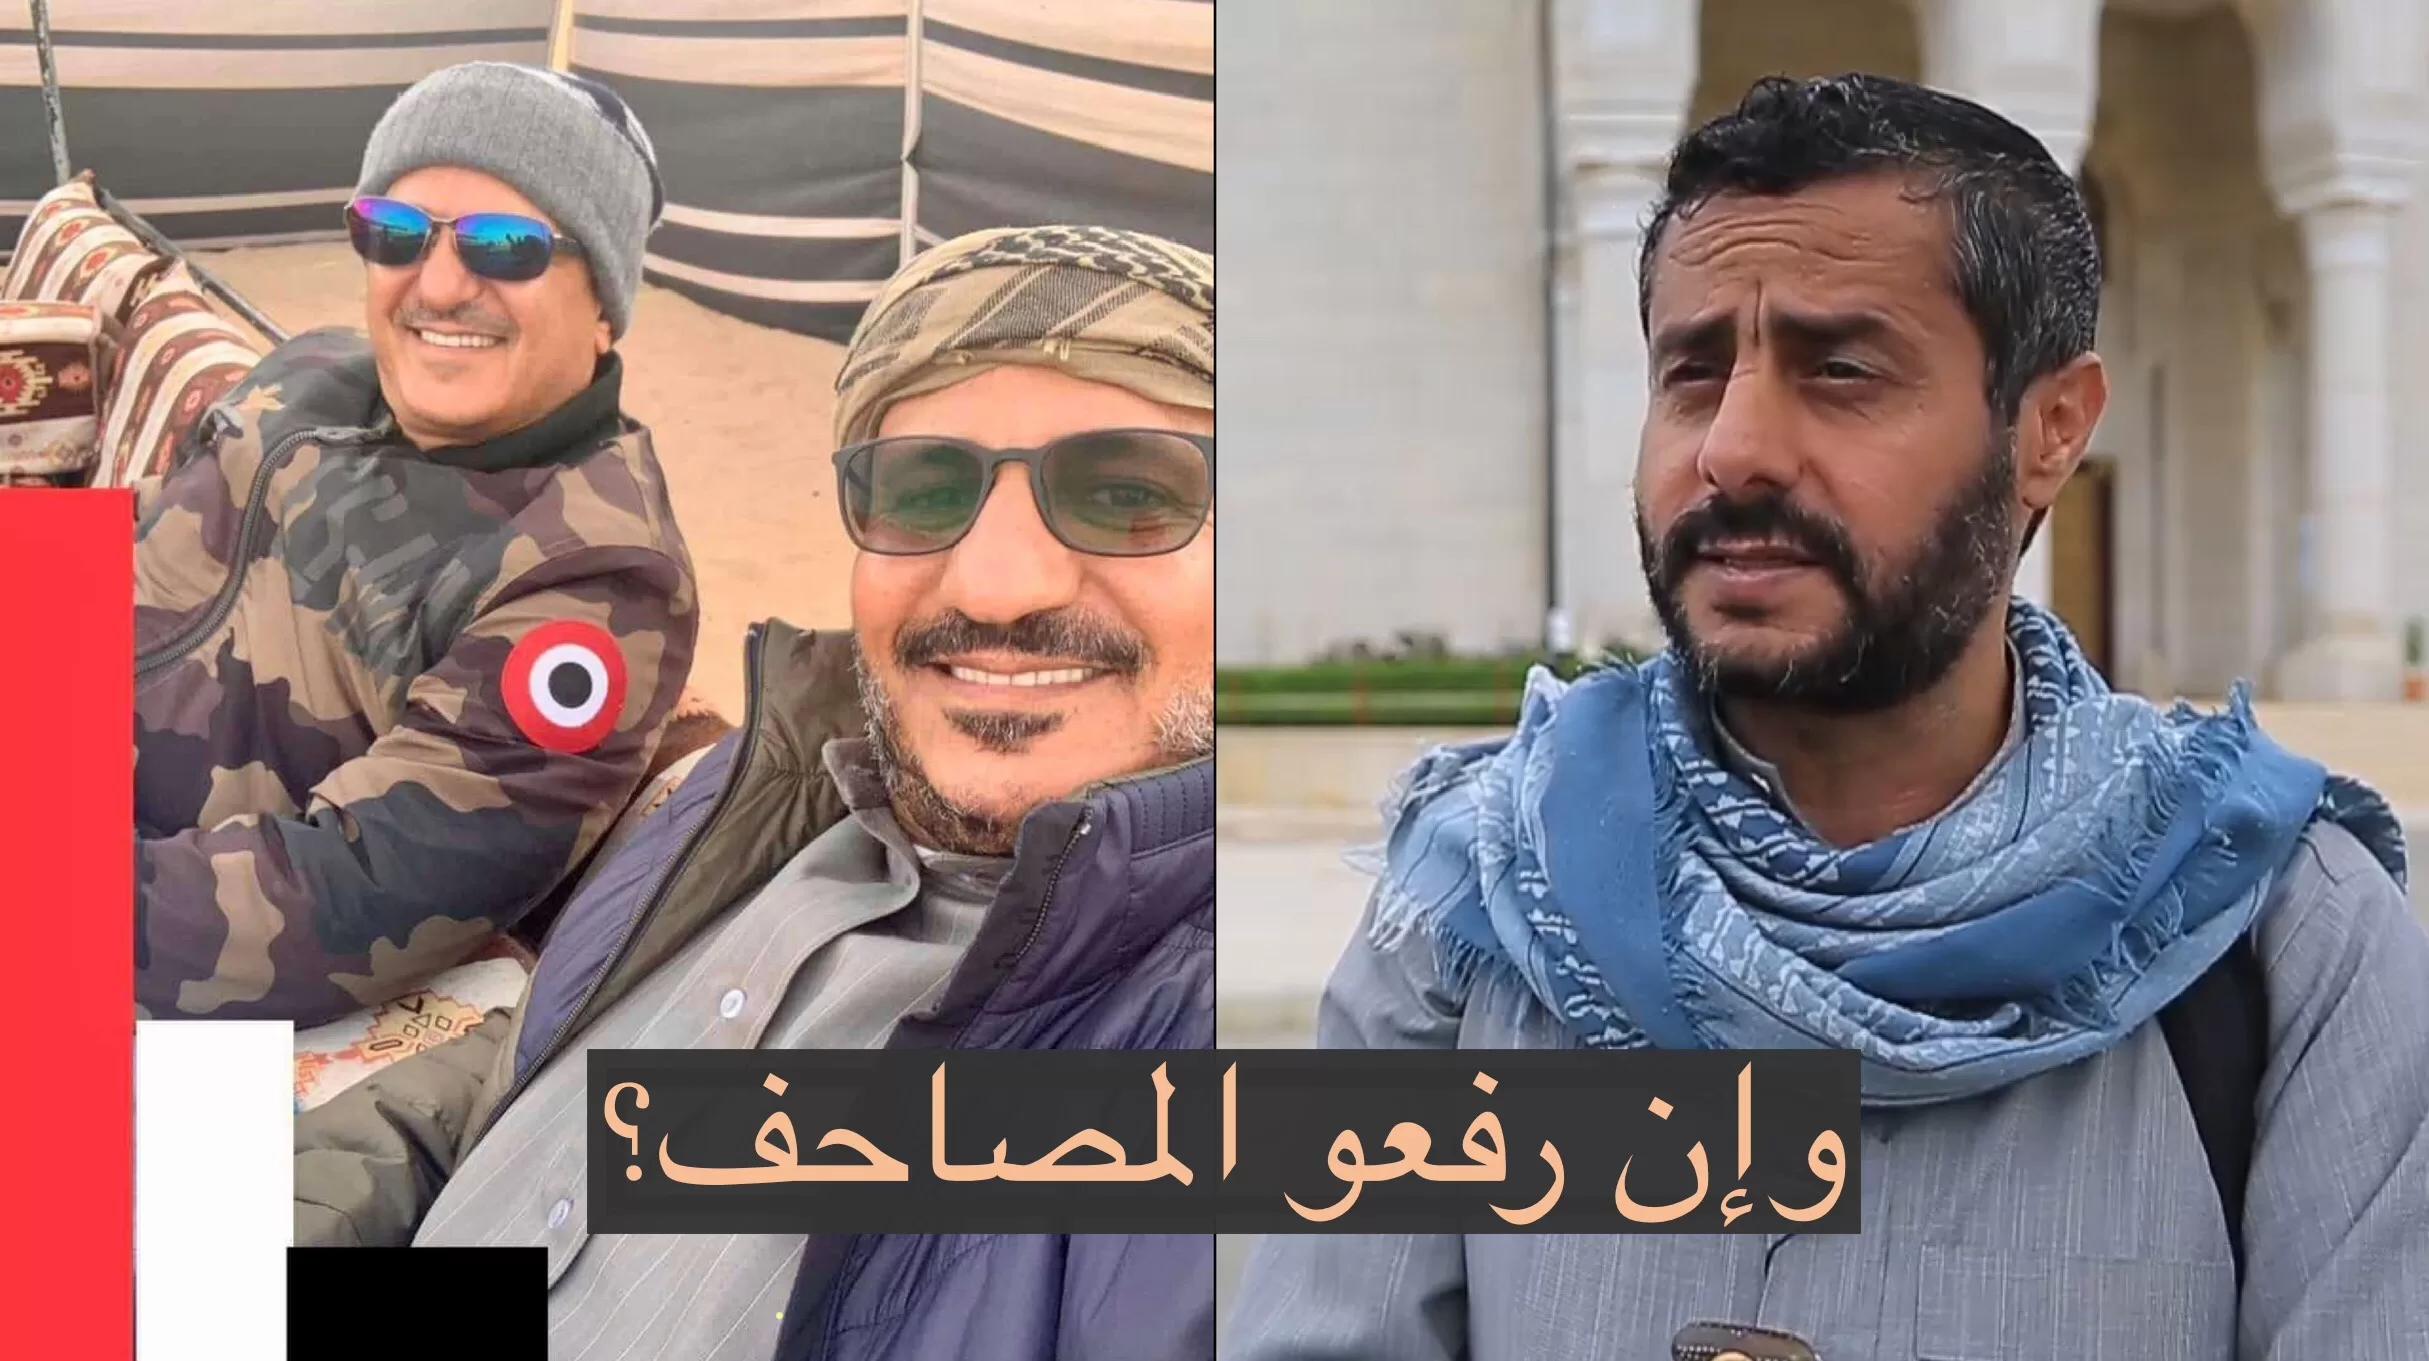 وإن رفعوا المصاحف: البخيتي يعقب على طارق صالح بقضية رفع العلم في صنعاء